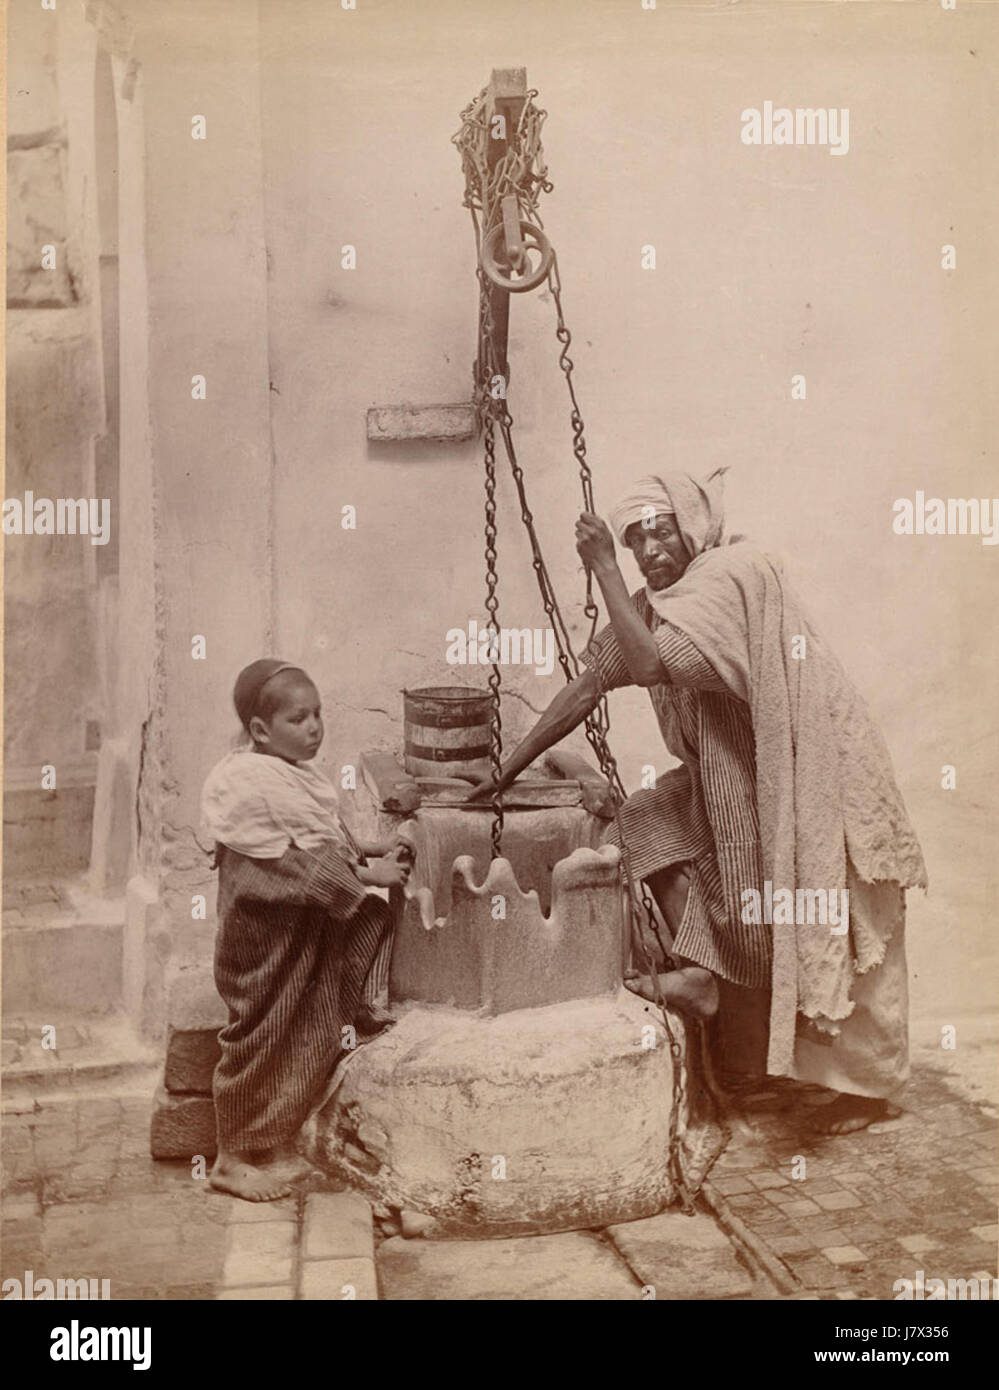 Algeria 1800s Tupper Scrapbooks Collection 6 Stock Photo